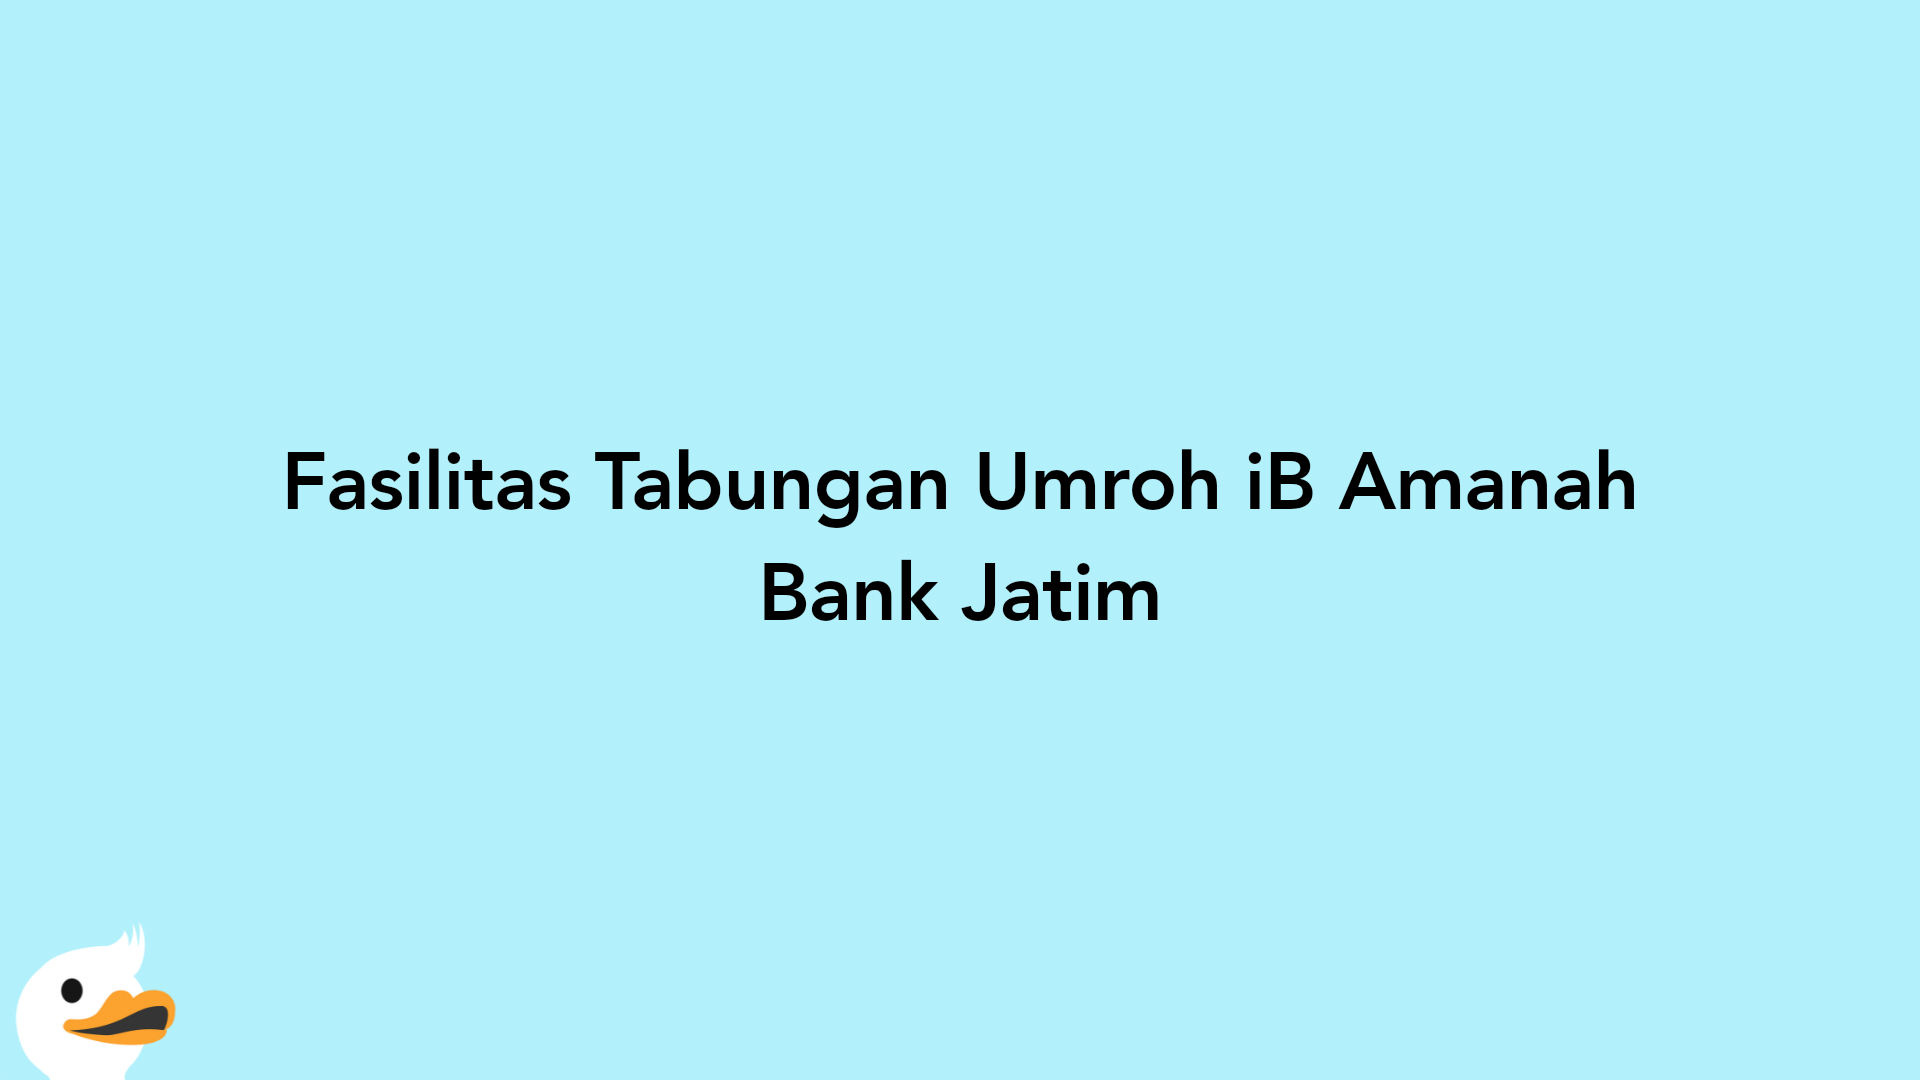 Fasilitas Tabungan Umroh iB Amanah Bank Jatim